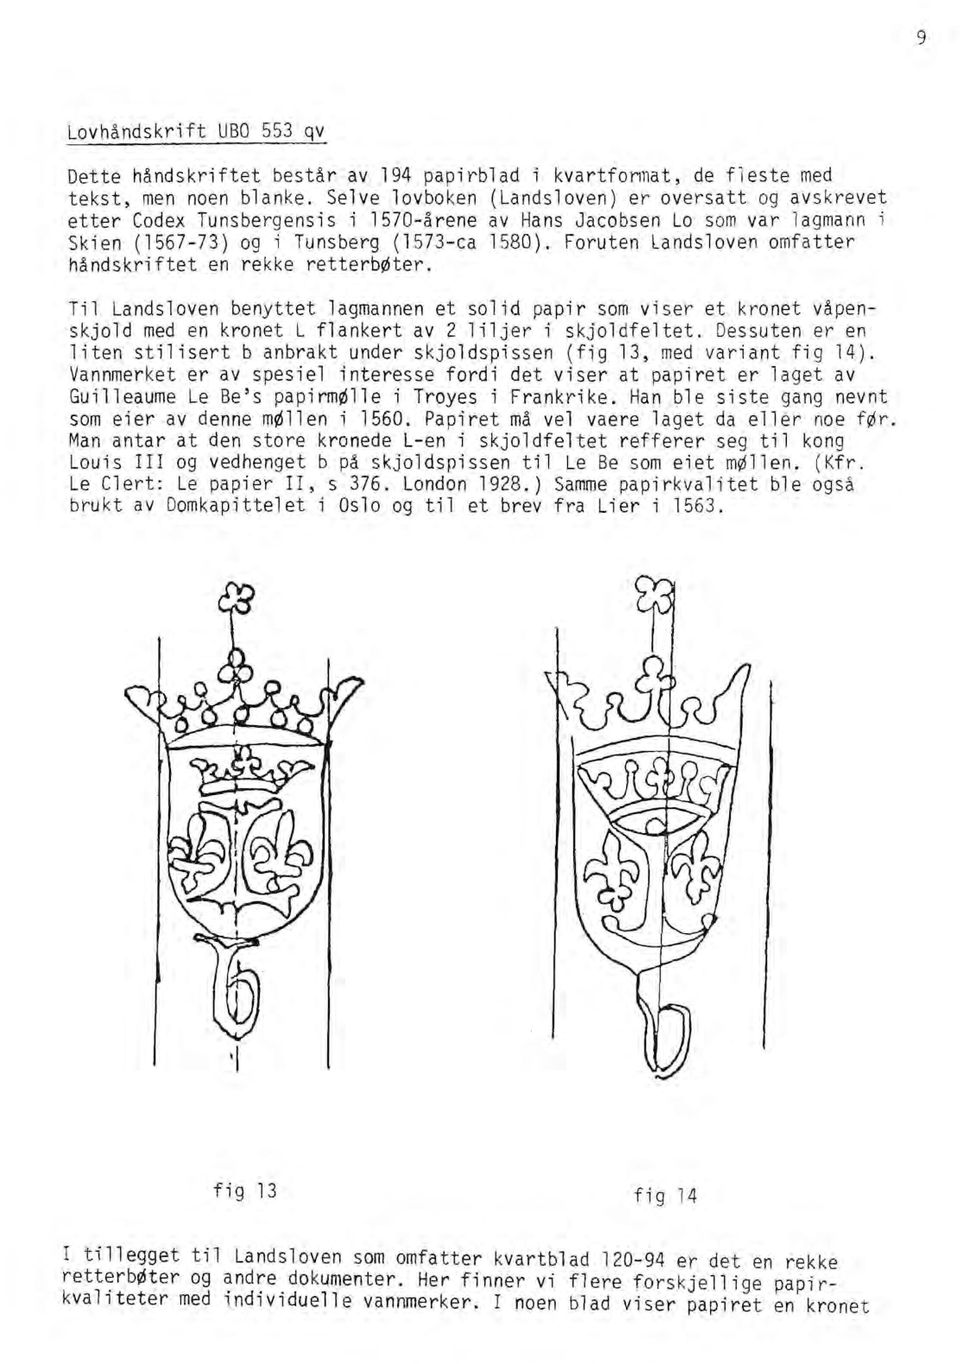 Foruten landsloven omfatter håndskriftet en rekke retterb~ter. Ti1 Landsloven benyttet lagmannen et solid papir som viser et kronet våpenskjold med en kronet L flankert av 2 liljer i skjoldfeltet.